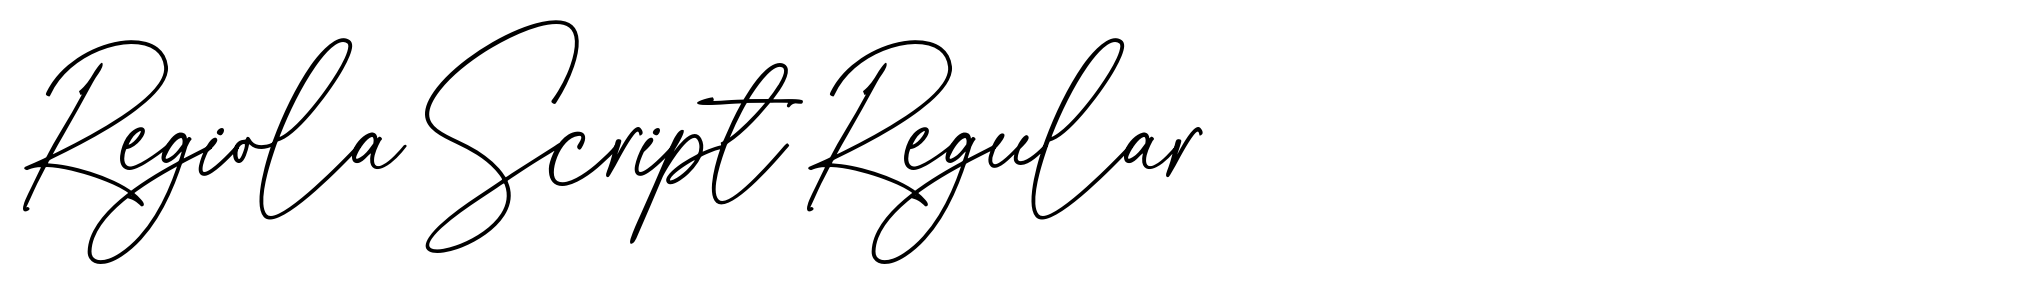 Regiola Script Regular image